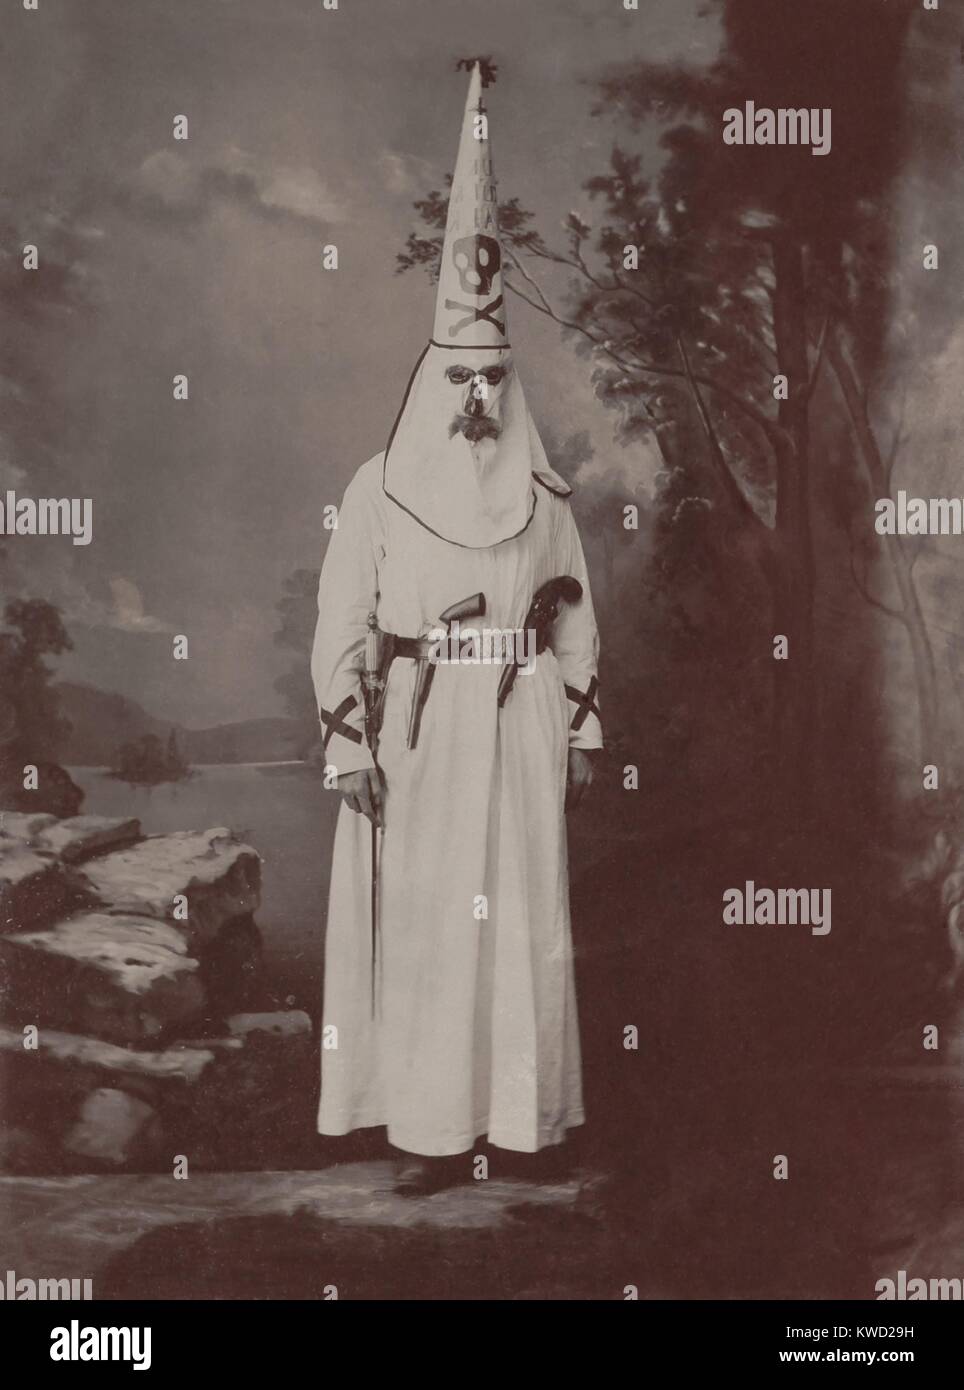 Ku Klux Klansman in Roben, mit zwei Pistolen und einem Schwert bewaffnet, C. 1880-1905. Foto von Owen A. Kenefick, Lawrence, Massachusetts das Kostüm hat dunkle Färbung um die Maske Öffnungen für Augen, Nase und Mund, ähnlich Klan Kostüme illustriert in einem 1868 Harpers Weekly. Der hohe, kegelförmige Hut, mit dem Totenkopf, wurde im Klan Outfits in der 1872 Memphis Mardi Gras Parade verschlissen (BSLOC 2017 20 69) angezeigt. Stockfoto